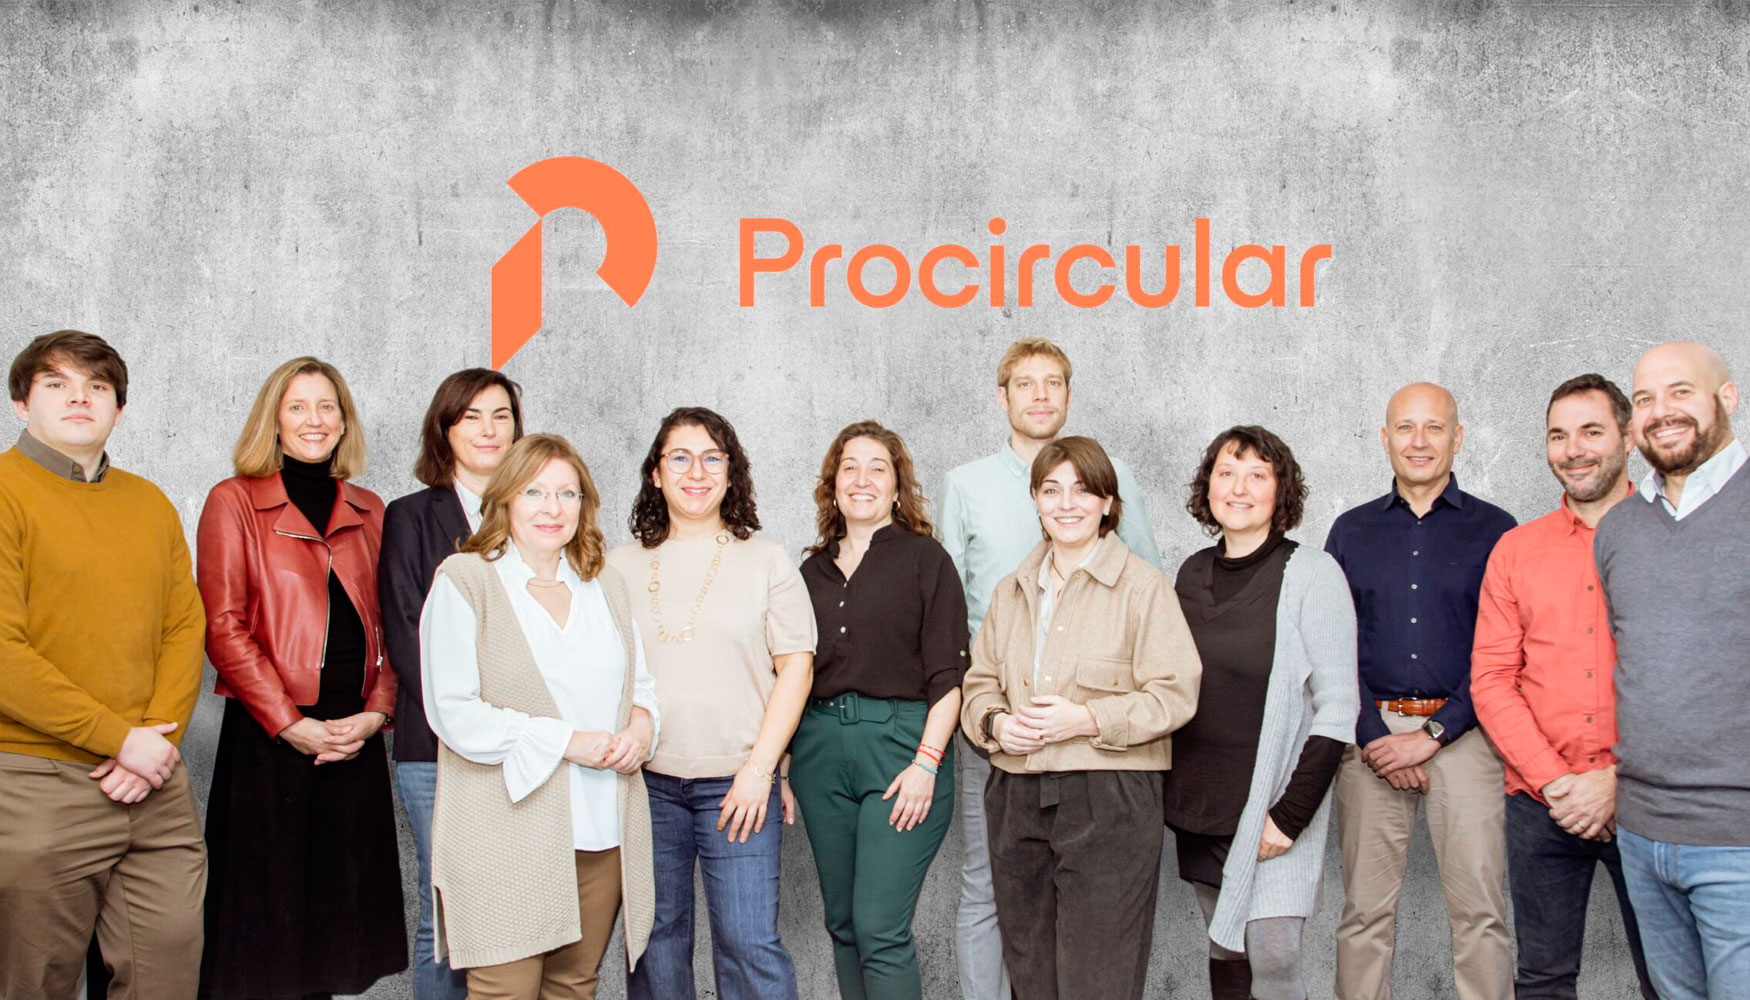 Imagen del equipo de Procircular en Espaa. La presidenta del Consejo de Procircular, Carmen Snchez, es la cuarta por la izquierda...